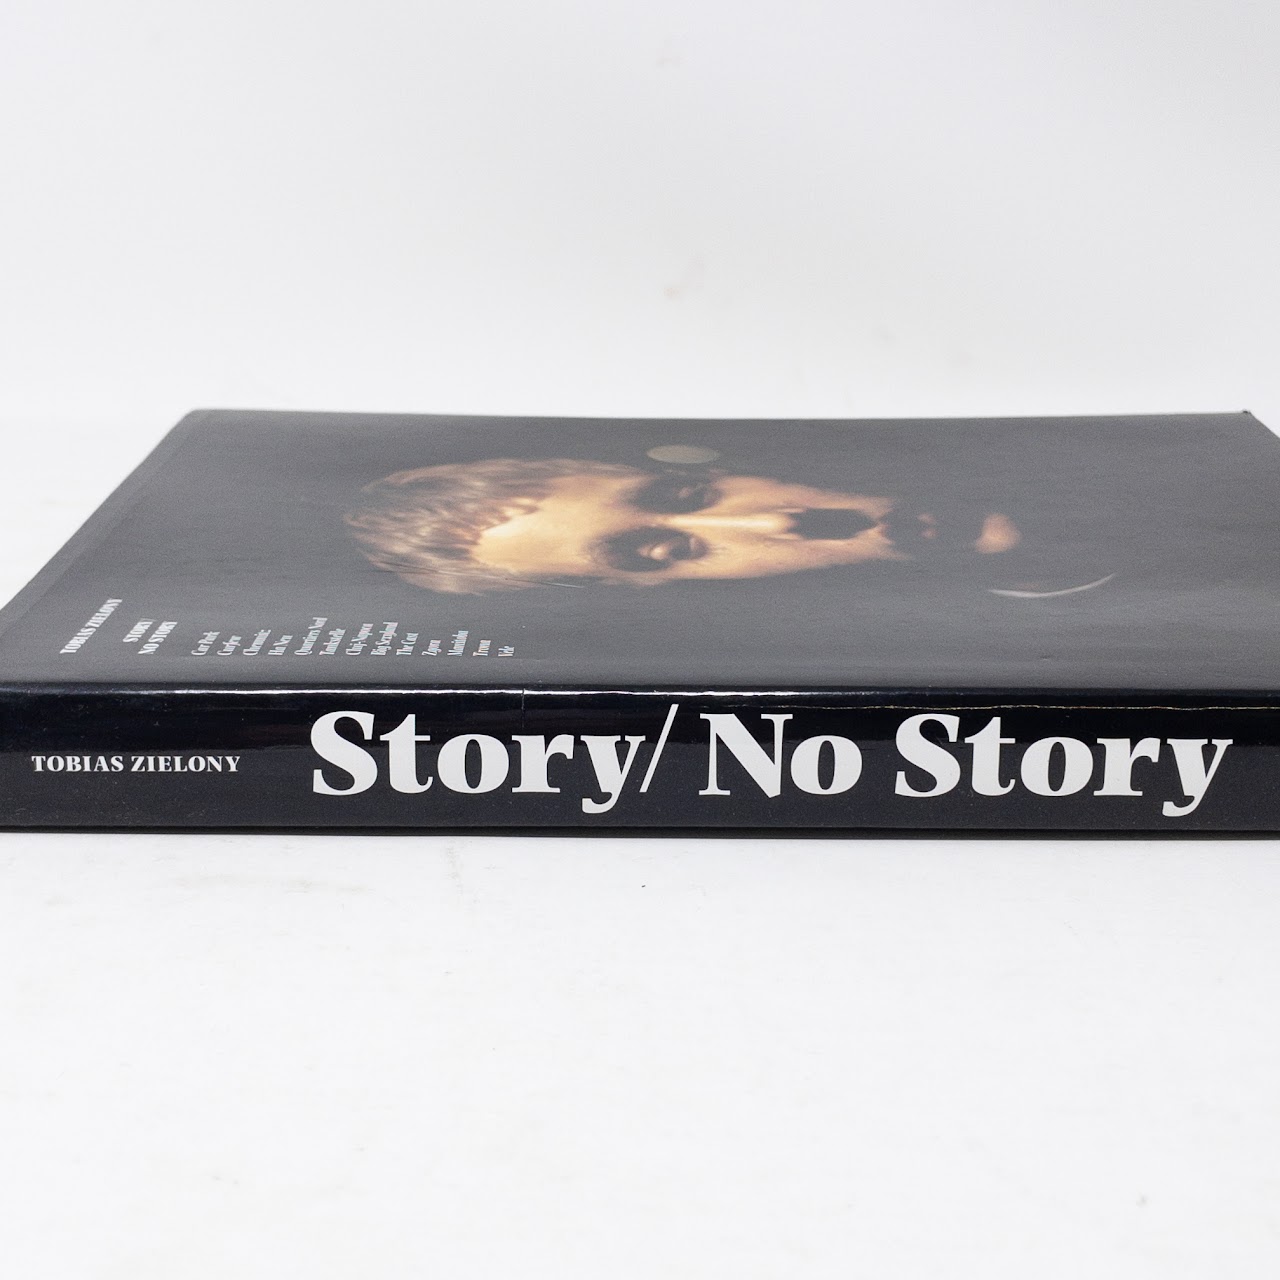 Tobias Zielony: Story/No Story